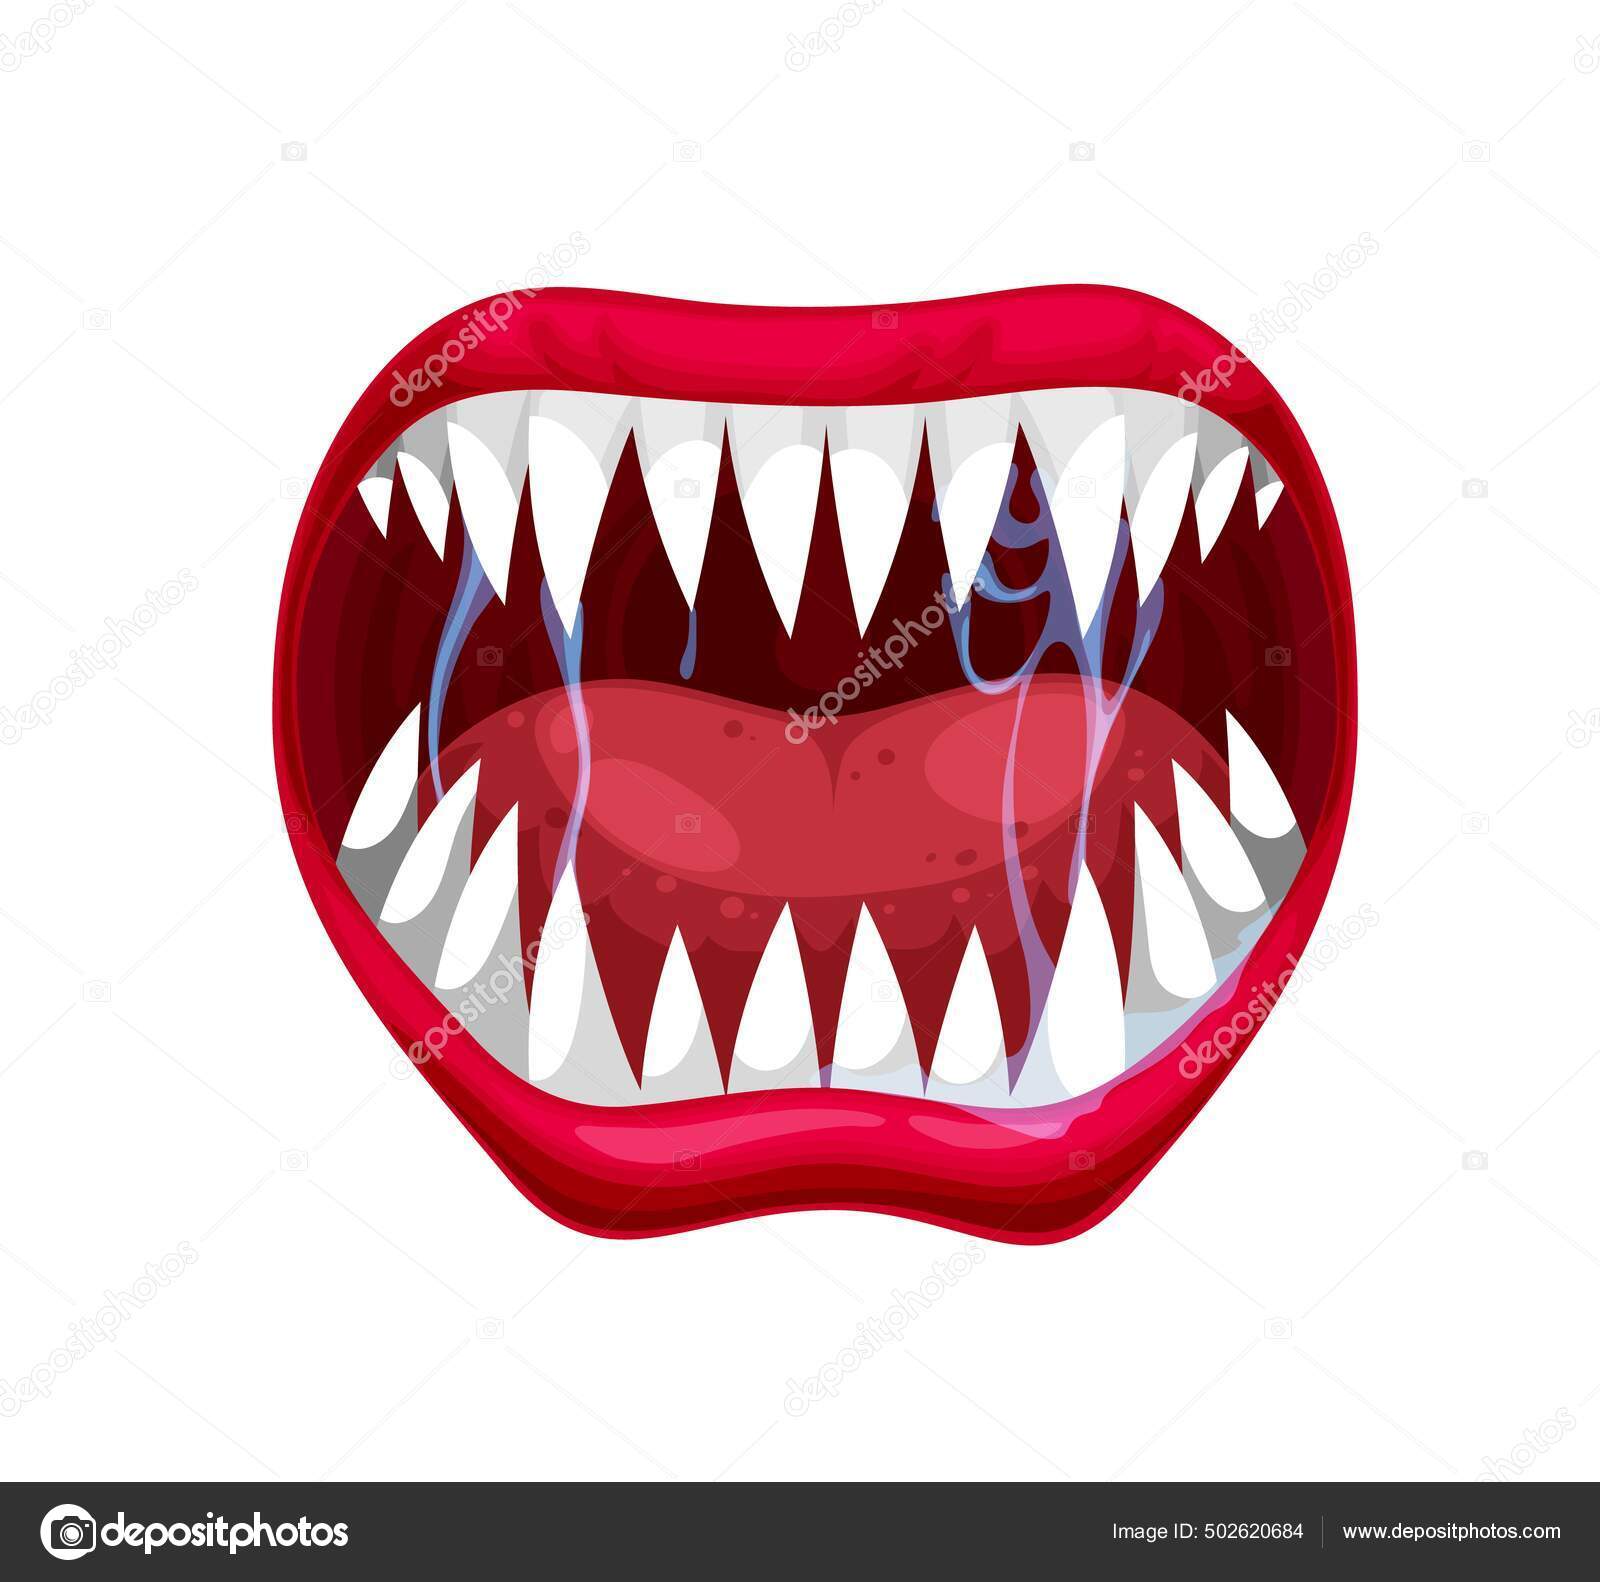 Ilustração do vetor de dentes de vampiro na boca